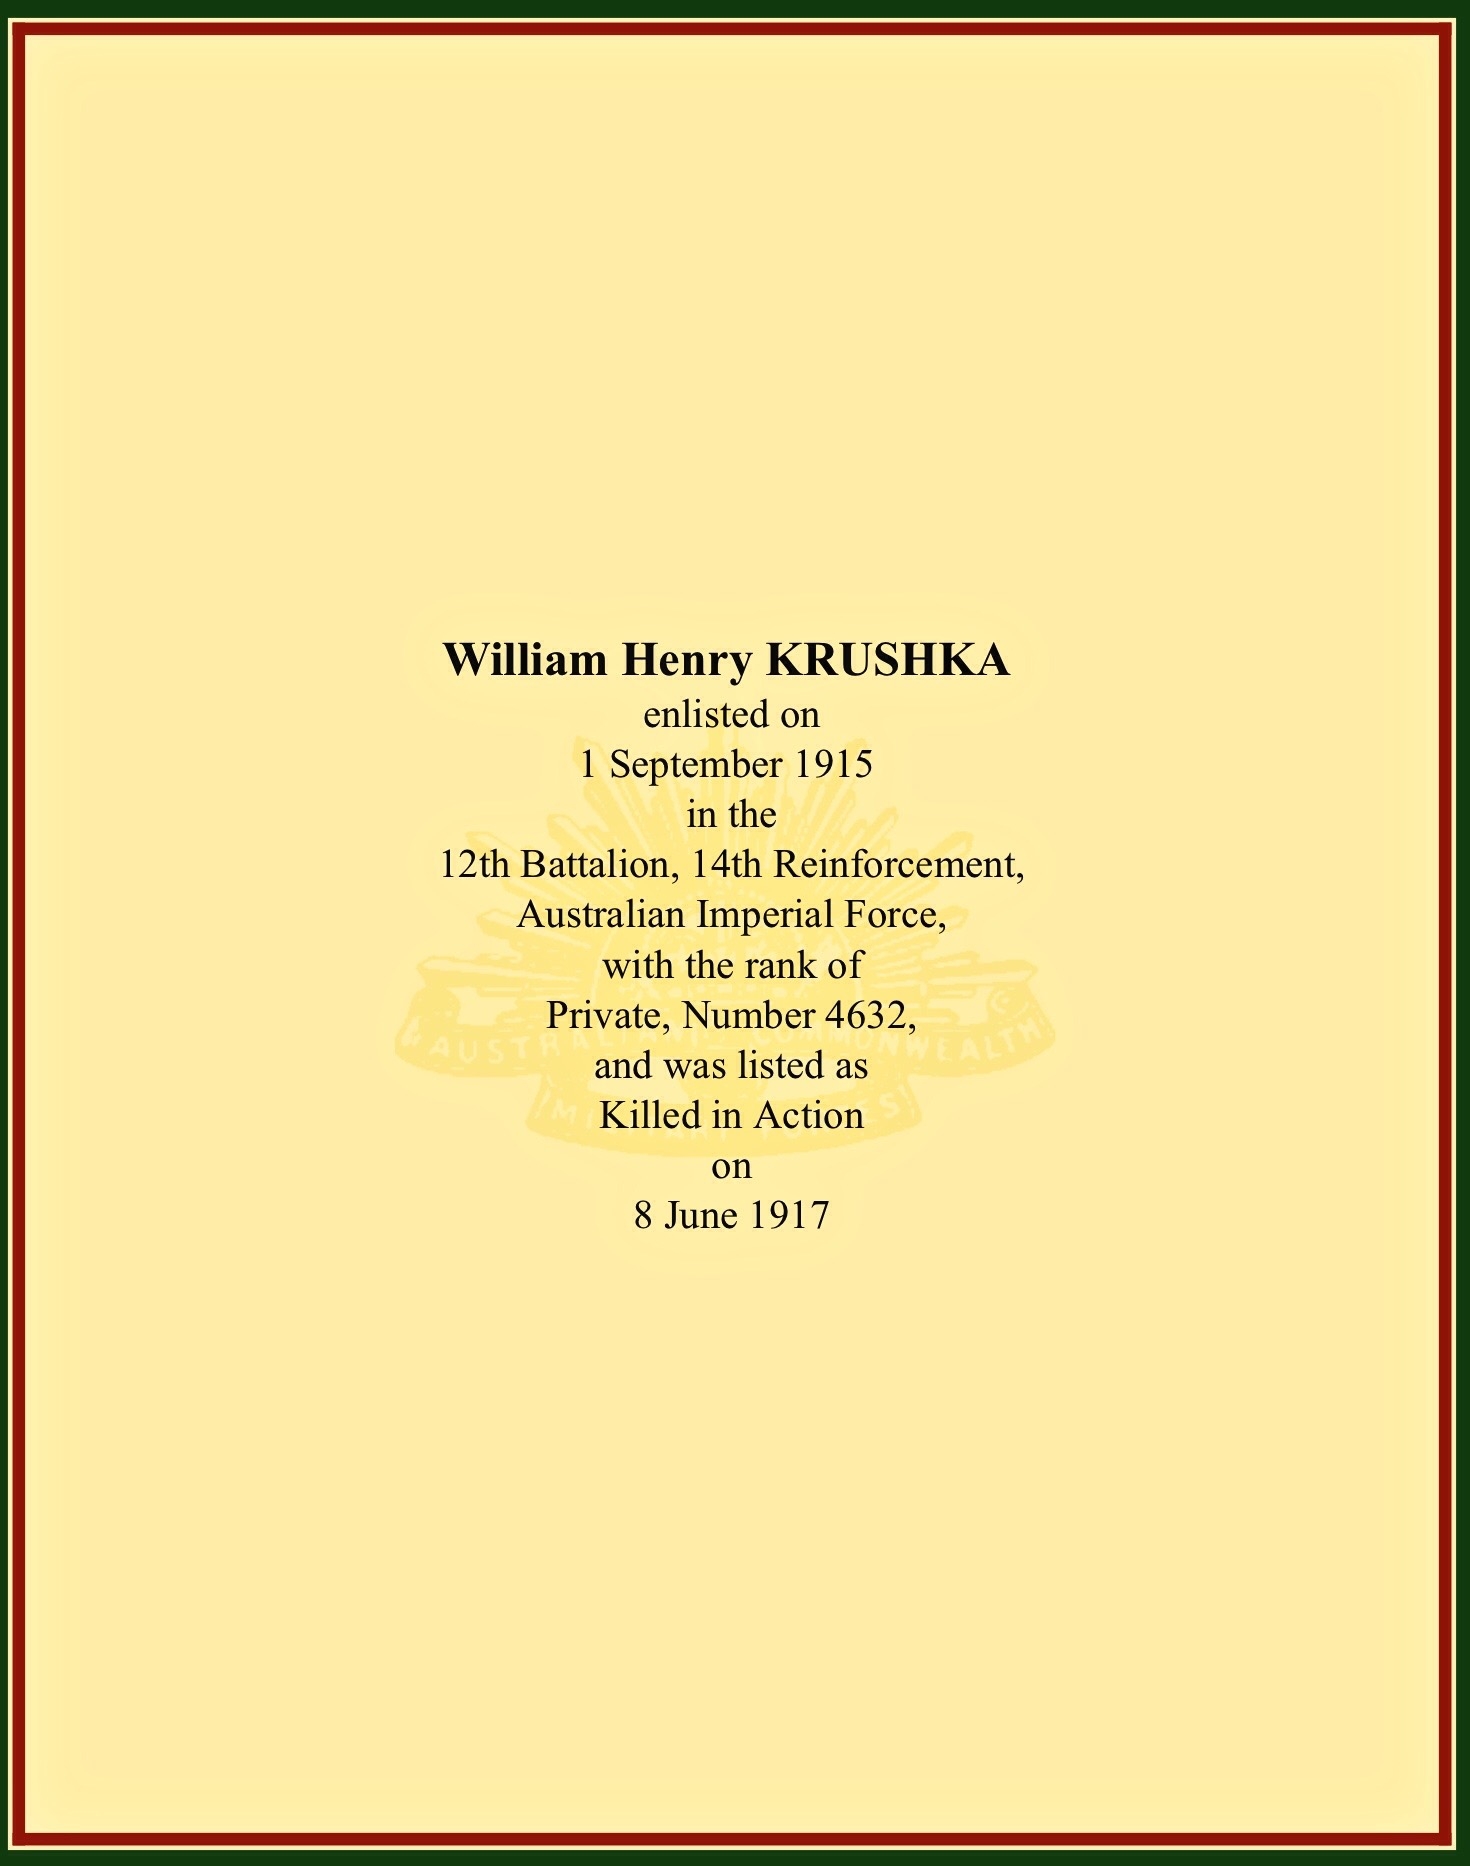 William Henery Krushka